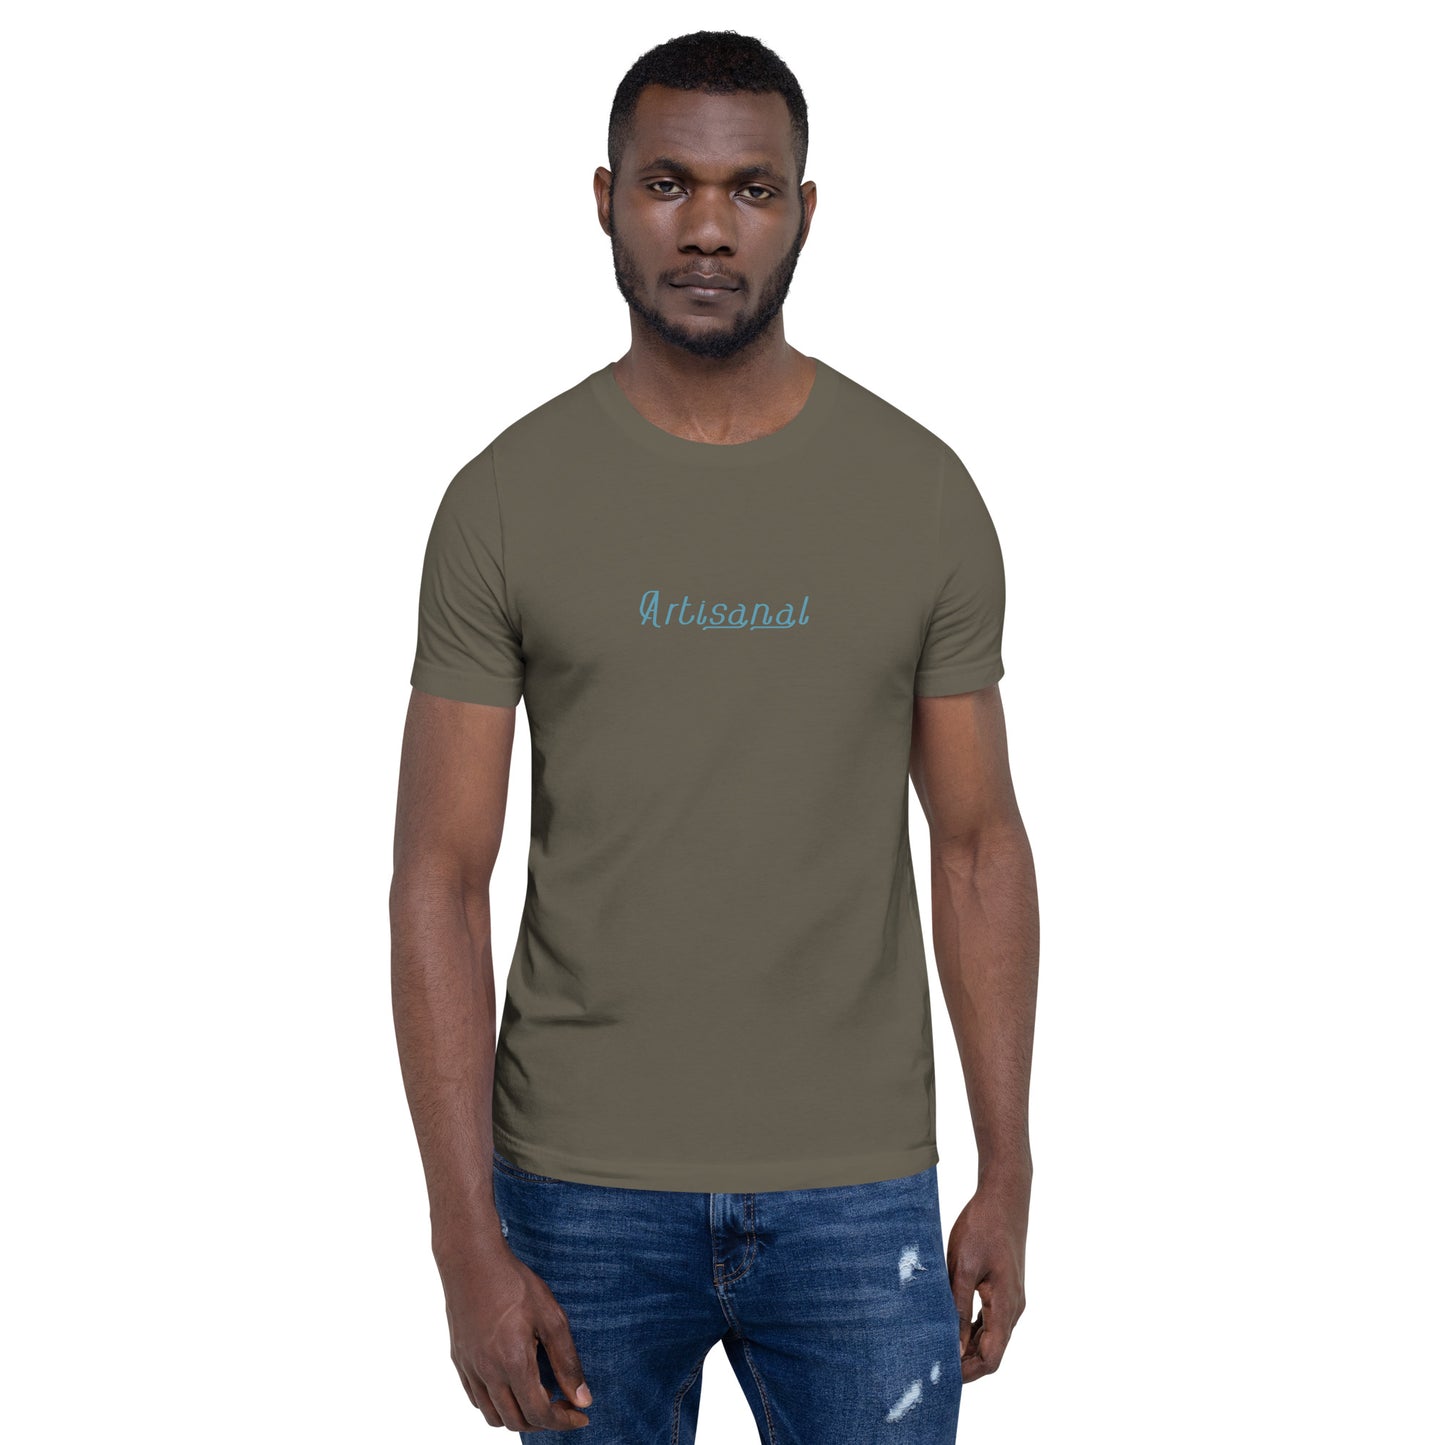 Artisanal - Unisex t-shirt